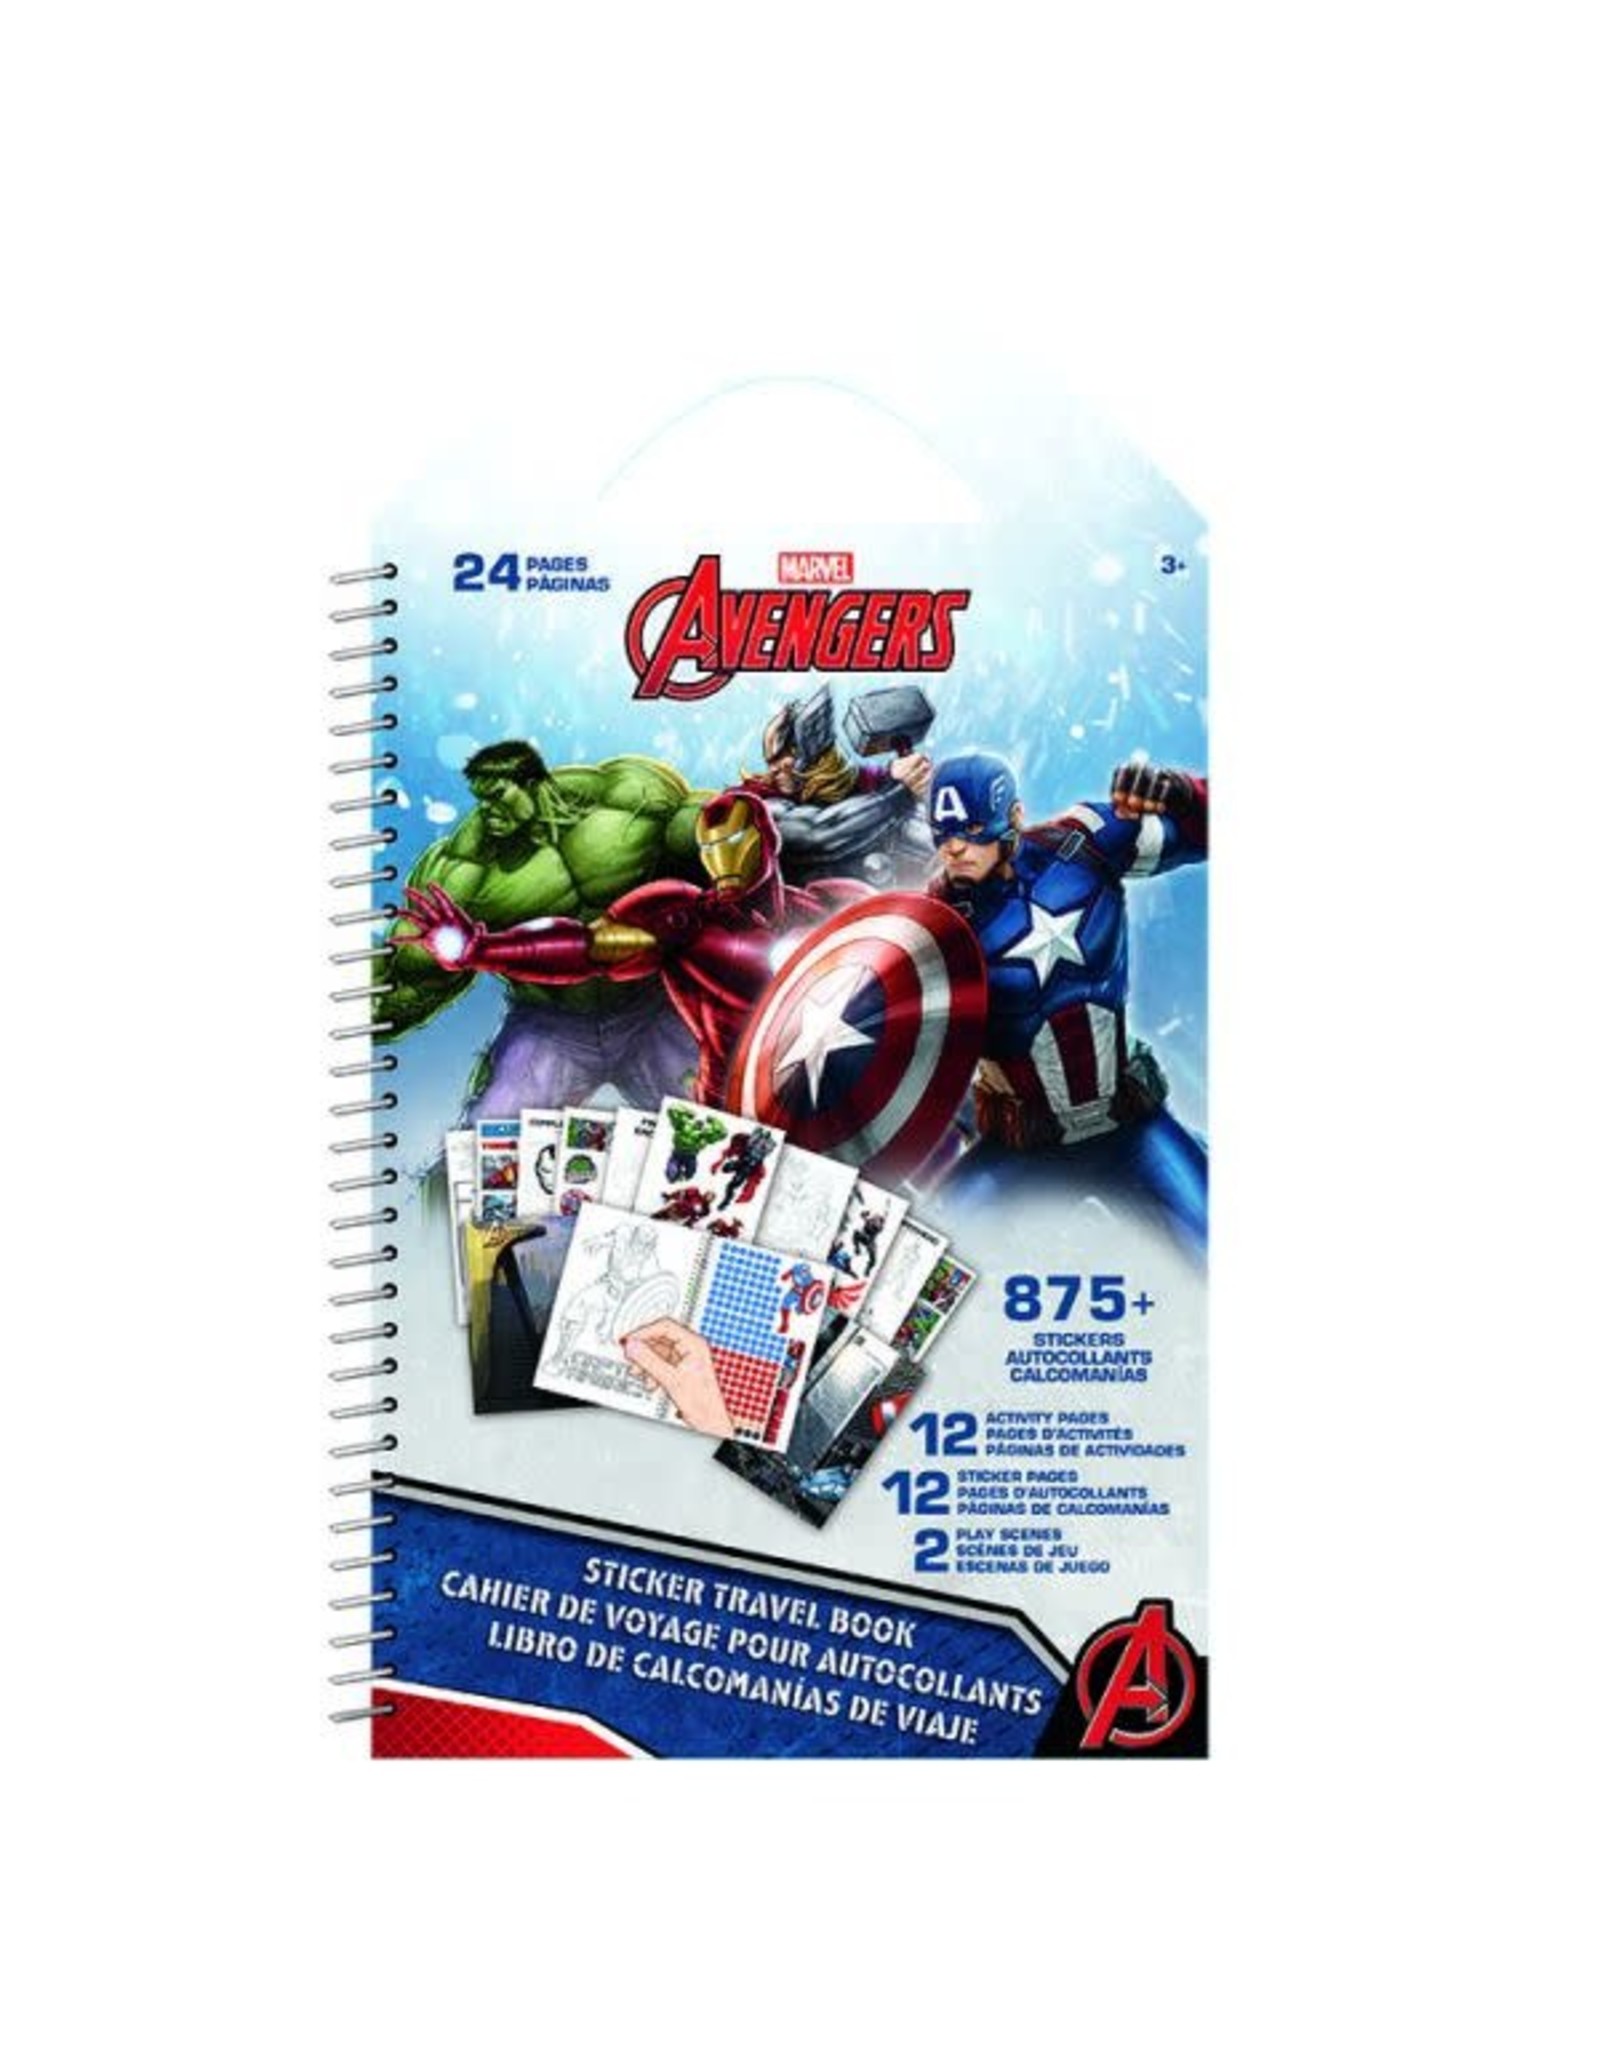 Avengers Assemble Sticker Travel Book